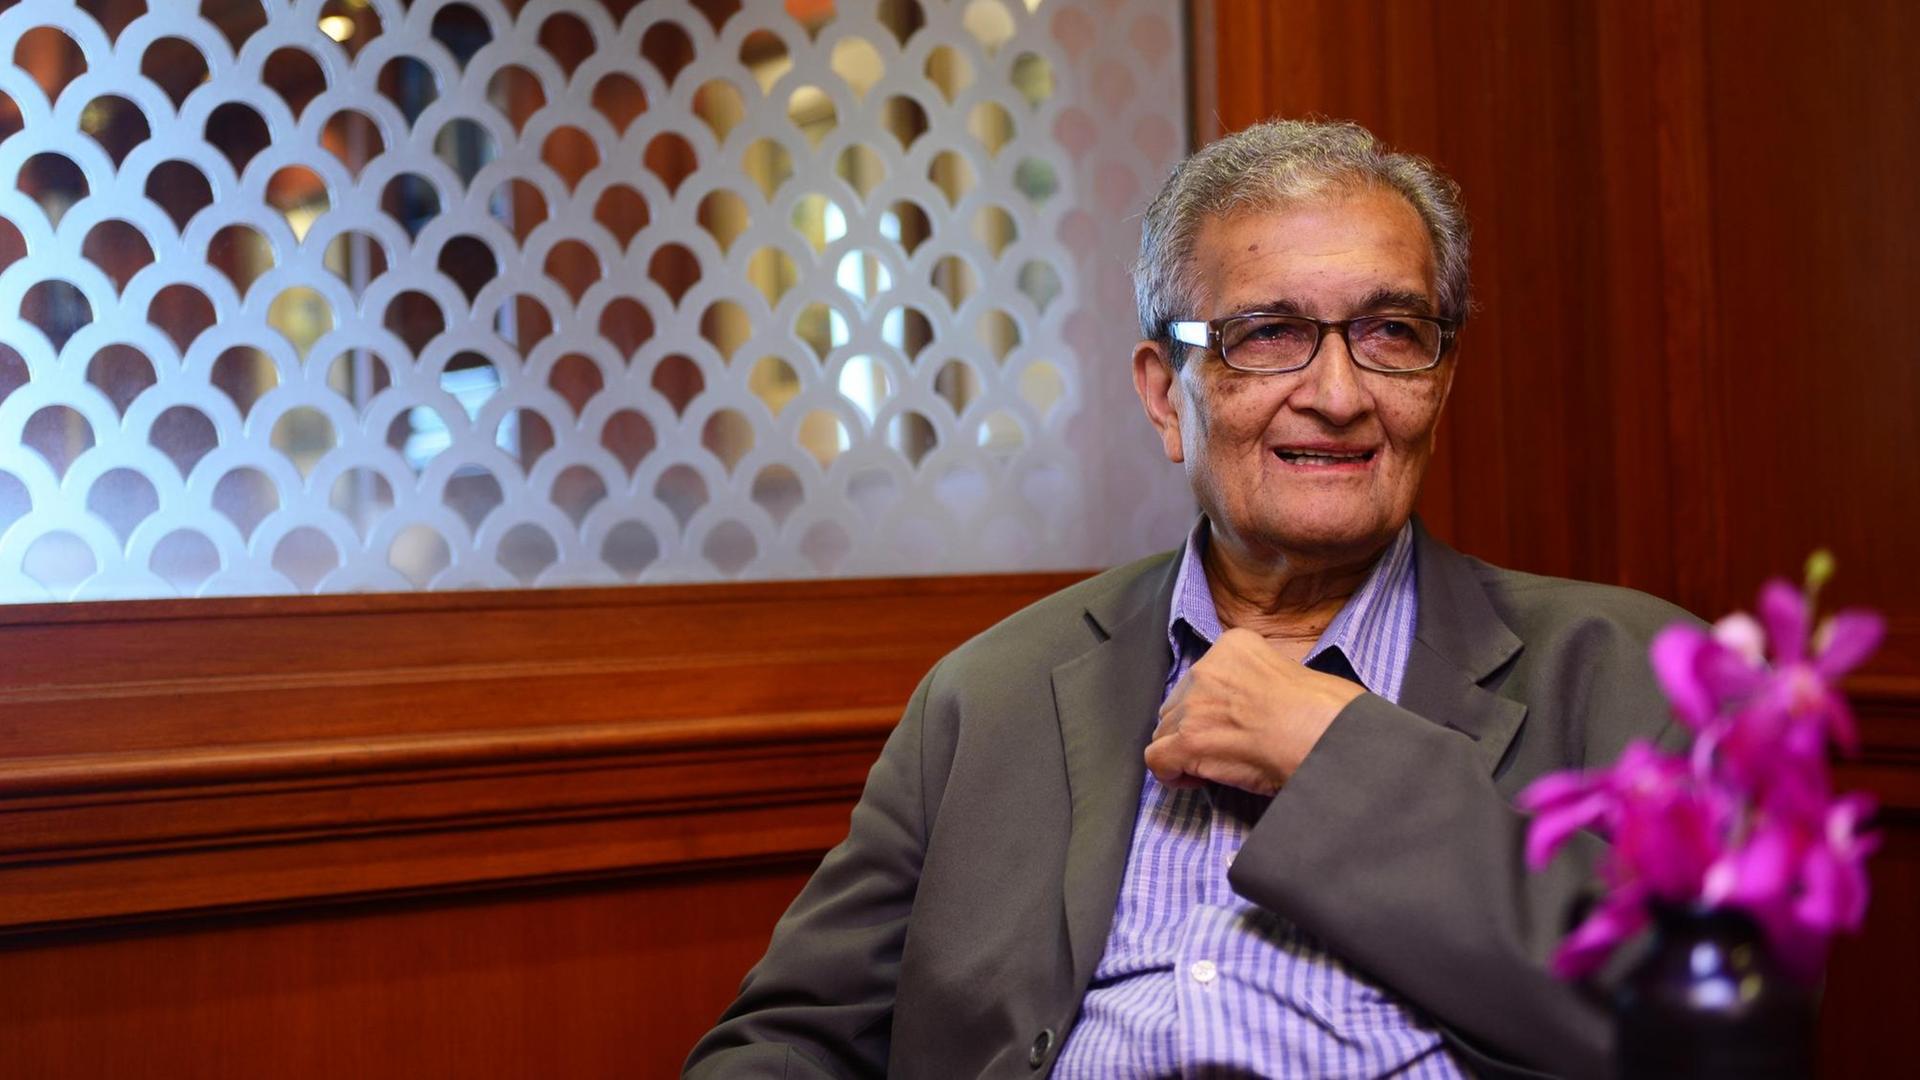 Portrait des Wirtschaftswissenschaftlers und Philosophen Amartya Sen